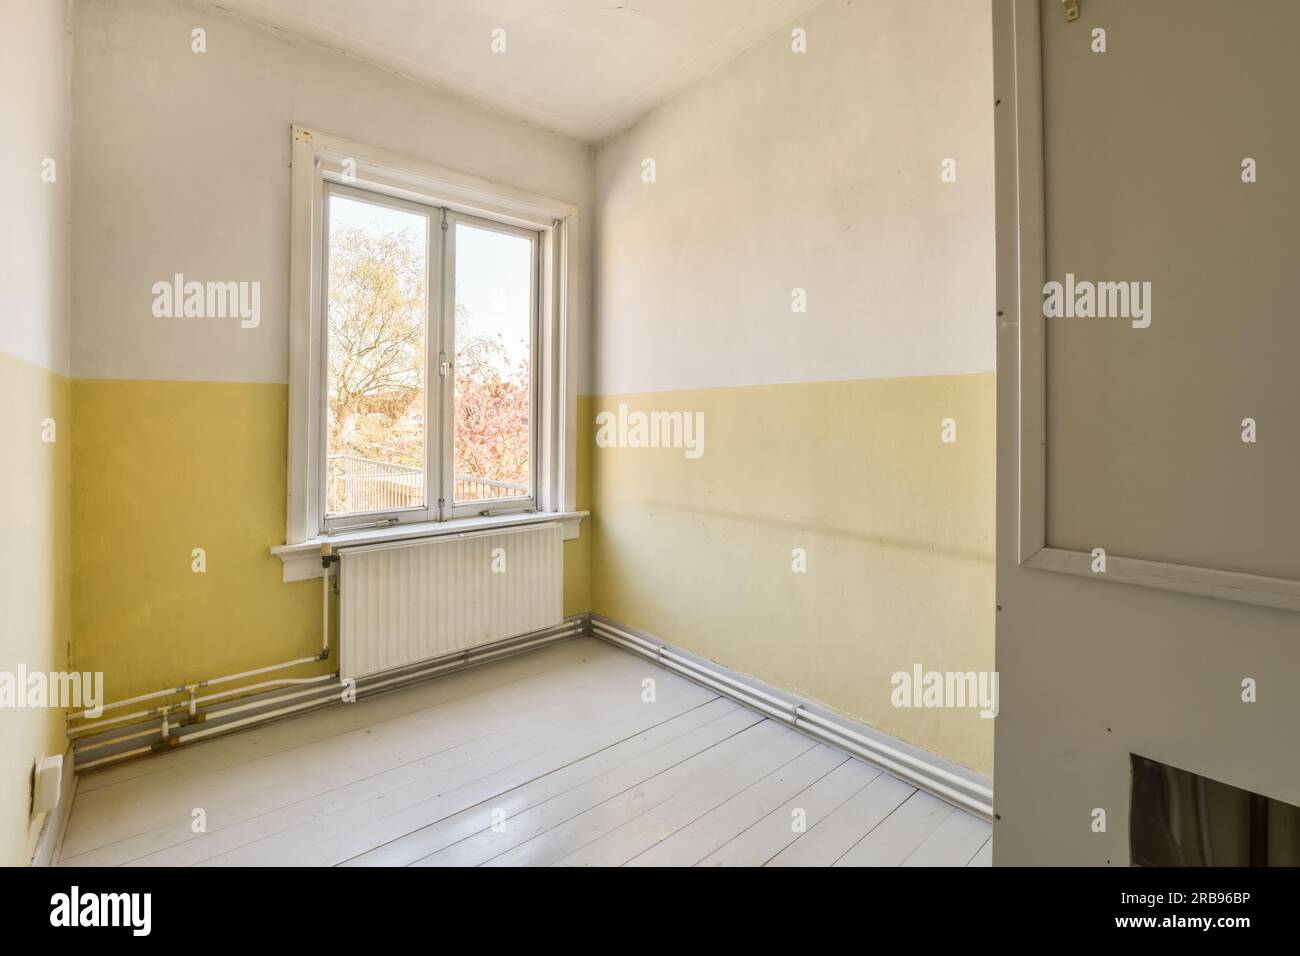 Ein leerer Raum mit gelber Farbe an den Wänden und weißen Bodenbrettern vor dem Fenster Stock photo Stockfoto